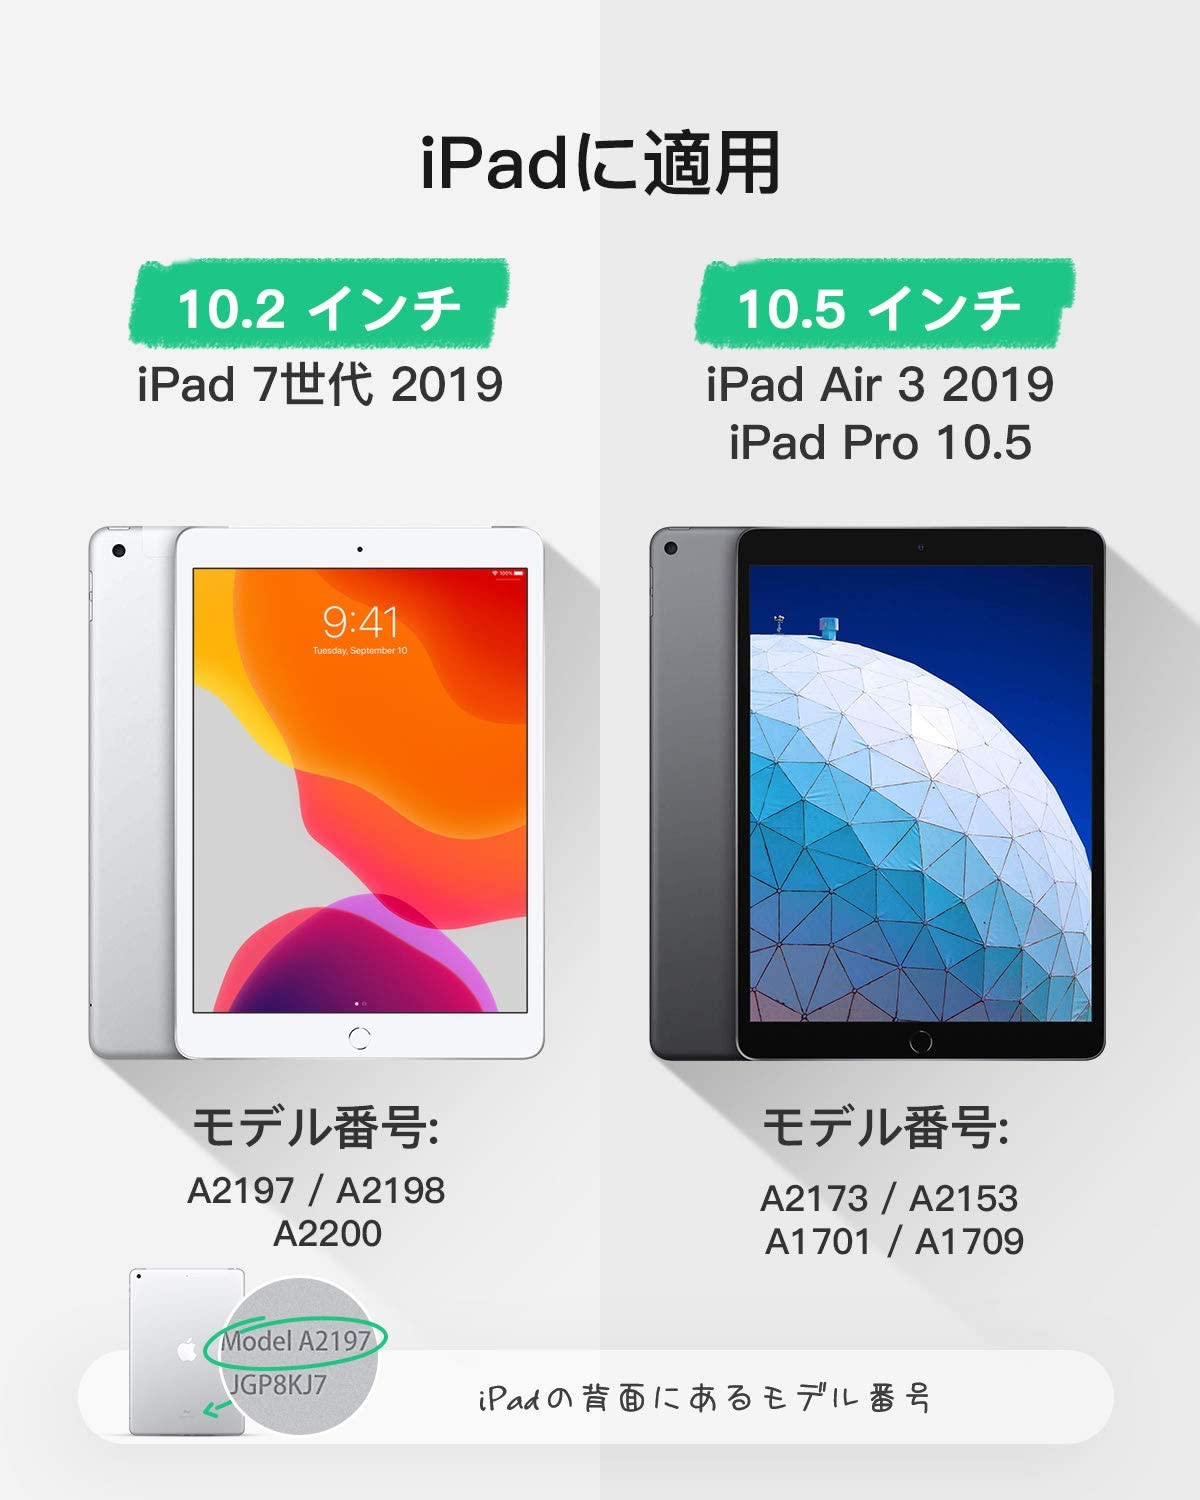 iPad キーボードケース (iPad 10.2 インチ、iPad Air 3 2019、iPad Pro 10.5に適合)、取り外し可能キーボード、Pencilホルダー KB02012 black - Inateckバックパックジャパン